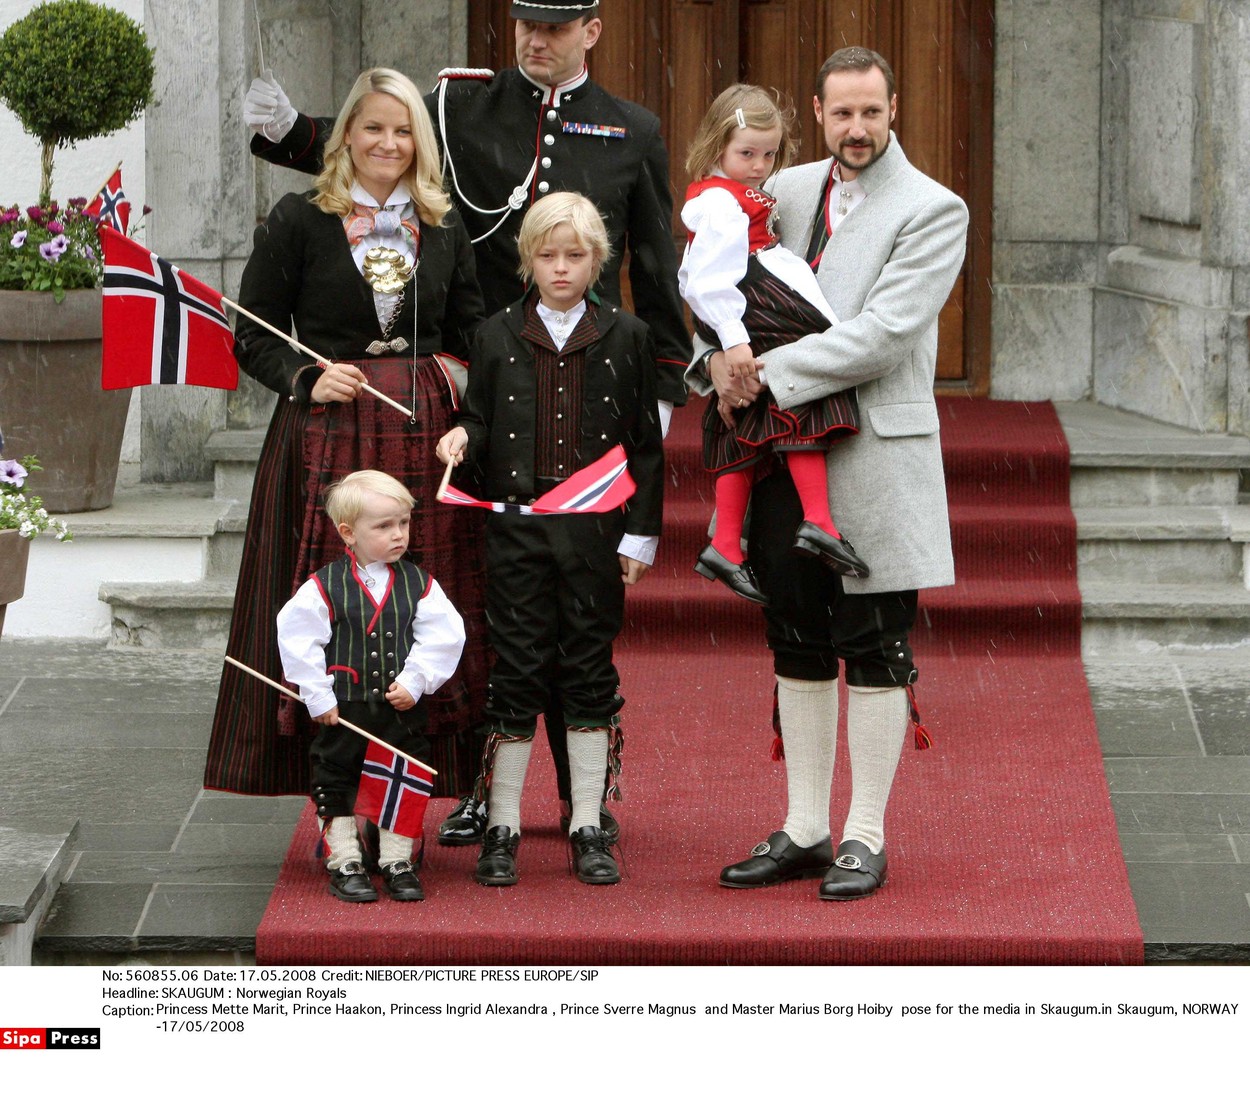 Mette-Marit és Haakon herceg gyermekei